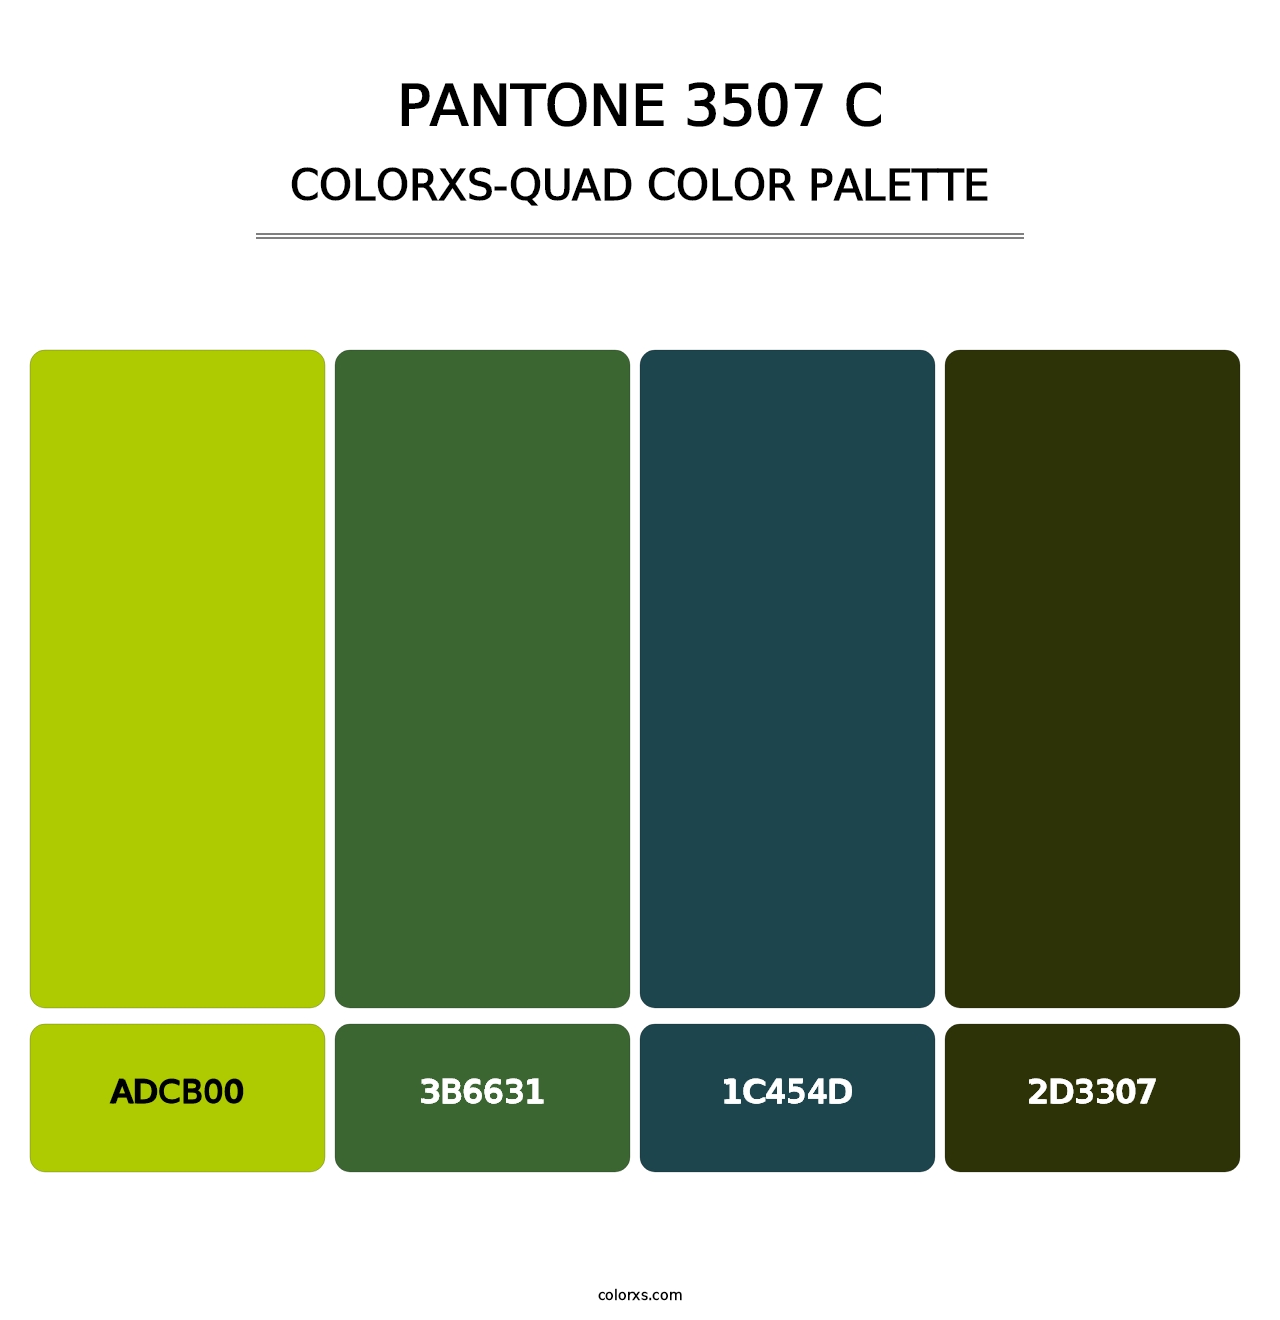 PANTONE 3507 C - Colorxs Quad Palette